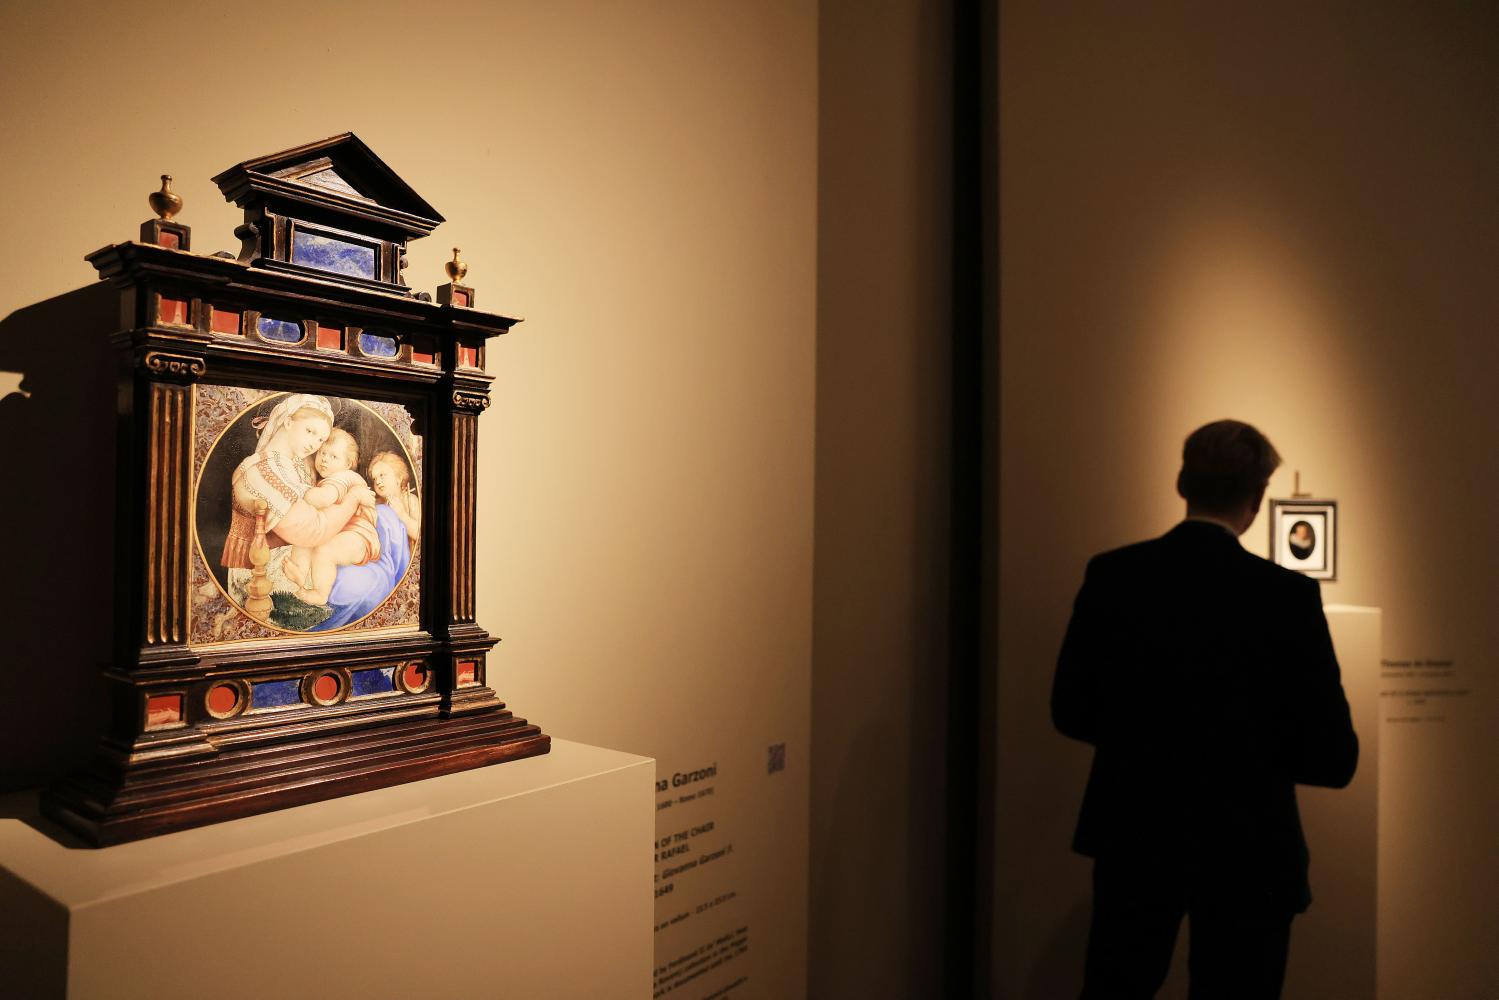 Das Gemälde "The virgin of the chair after Raphael" von Giovanna Garzoni steht auf dem Stand der Galerie Rob Smeets auf einem Sockel